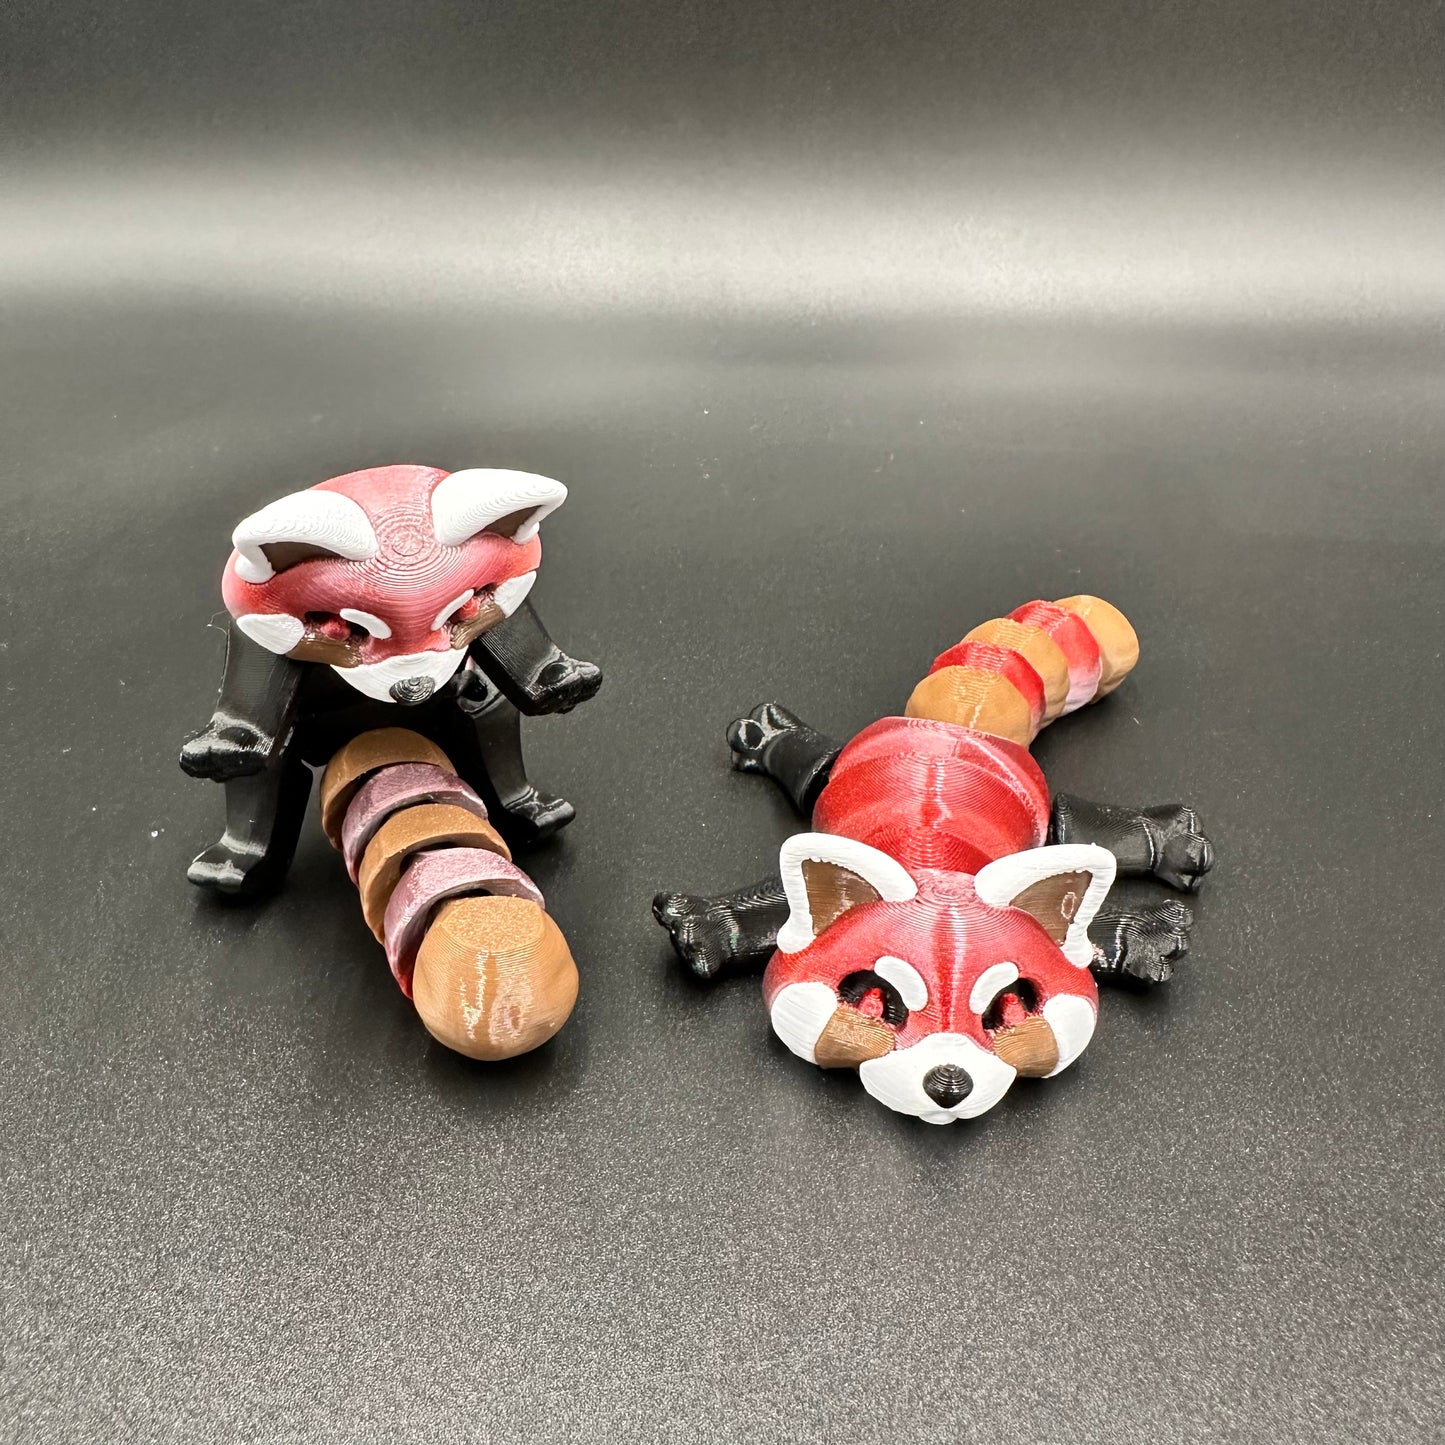 3D Printed Red Panda